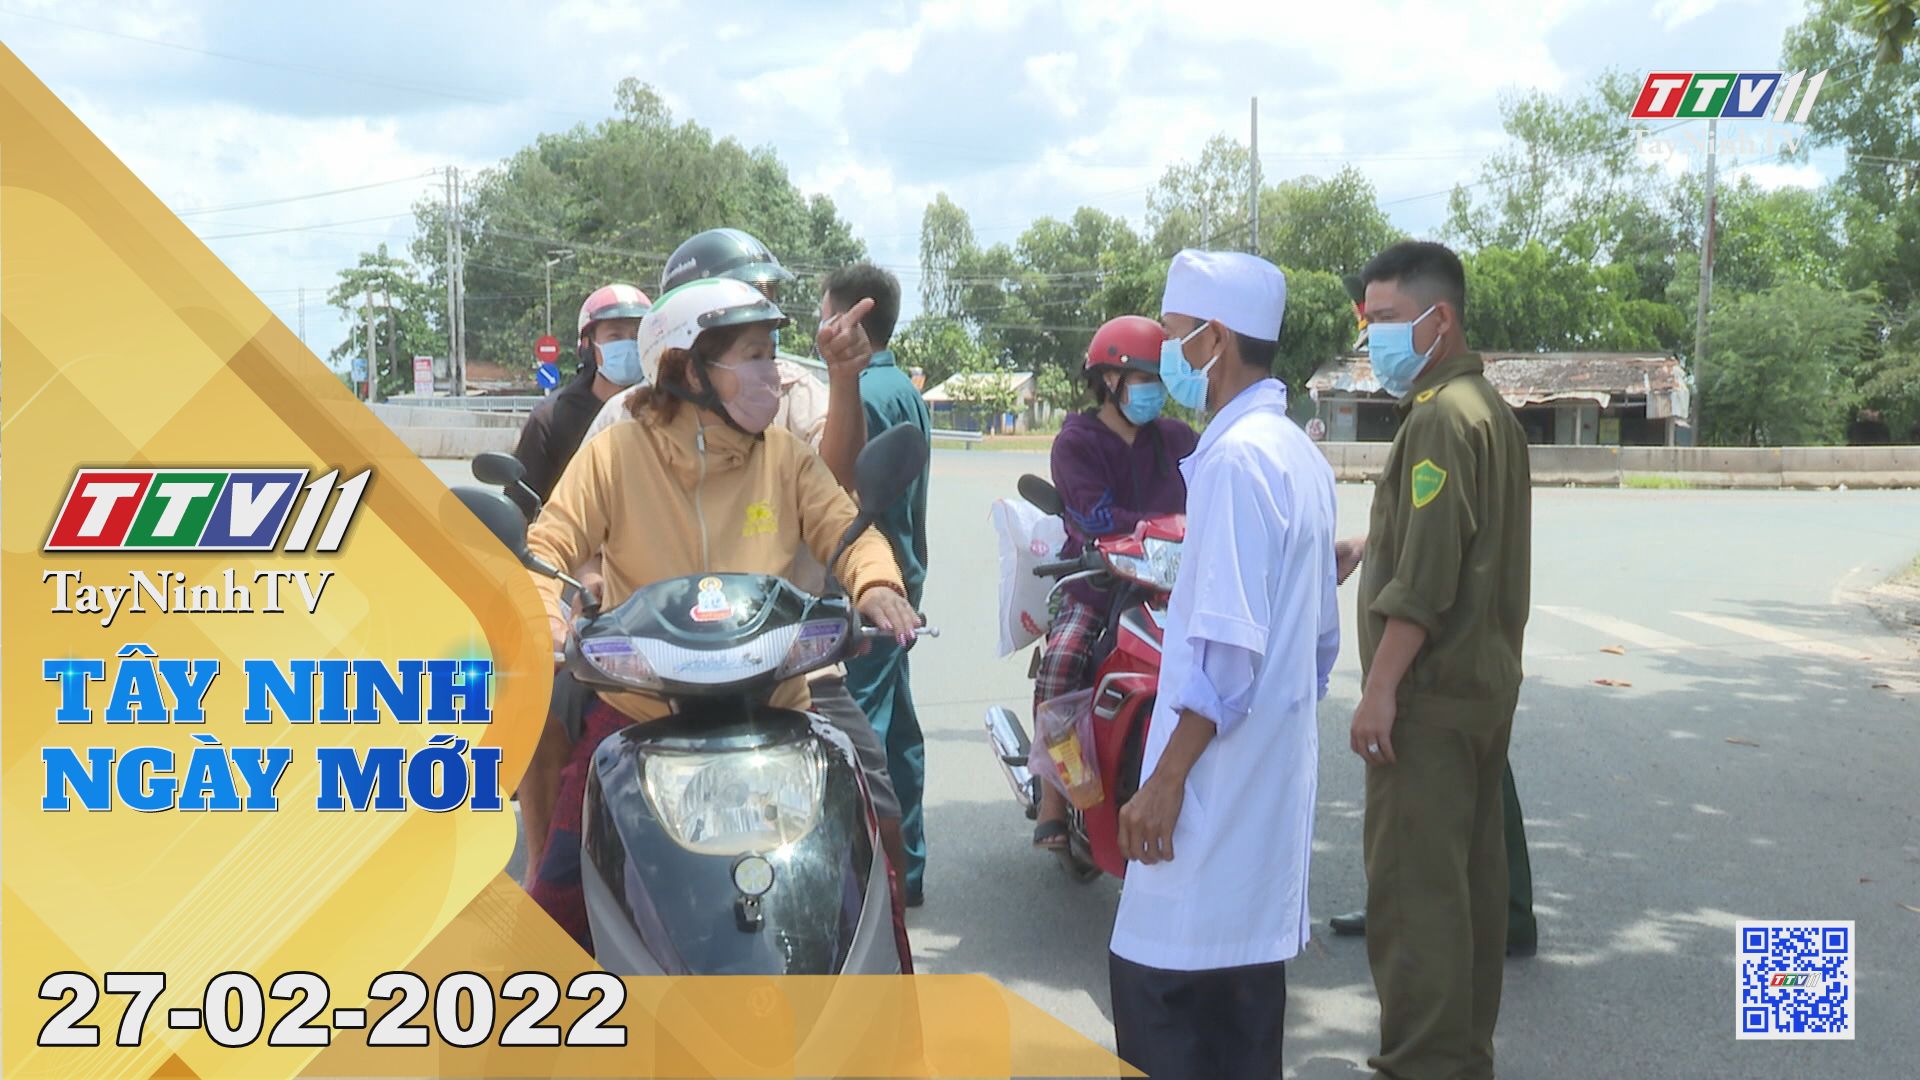 Tây Ninh ngày mới 27-02-2022 | Tin tức hôm nay | TayNinhTV